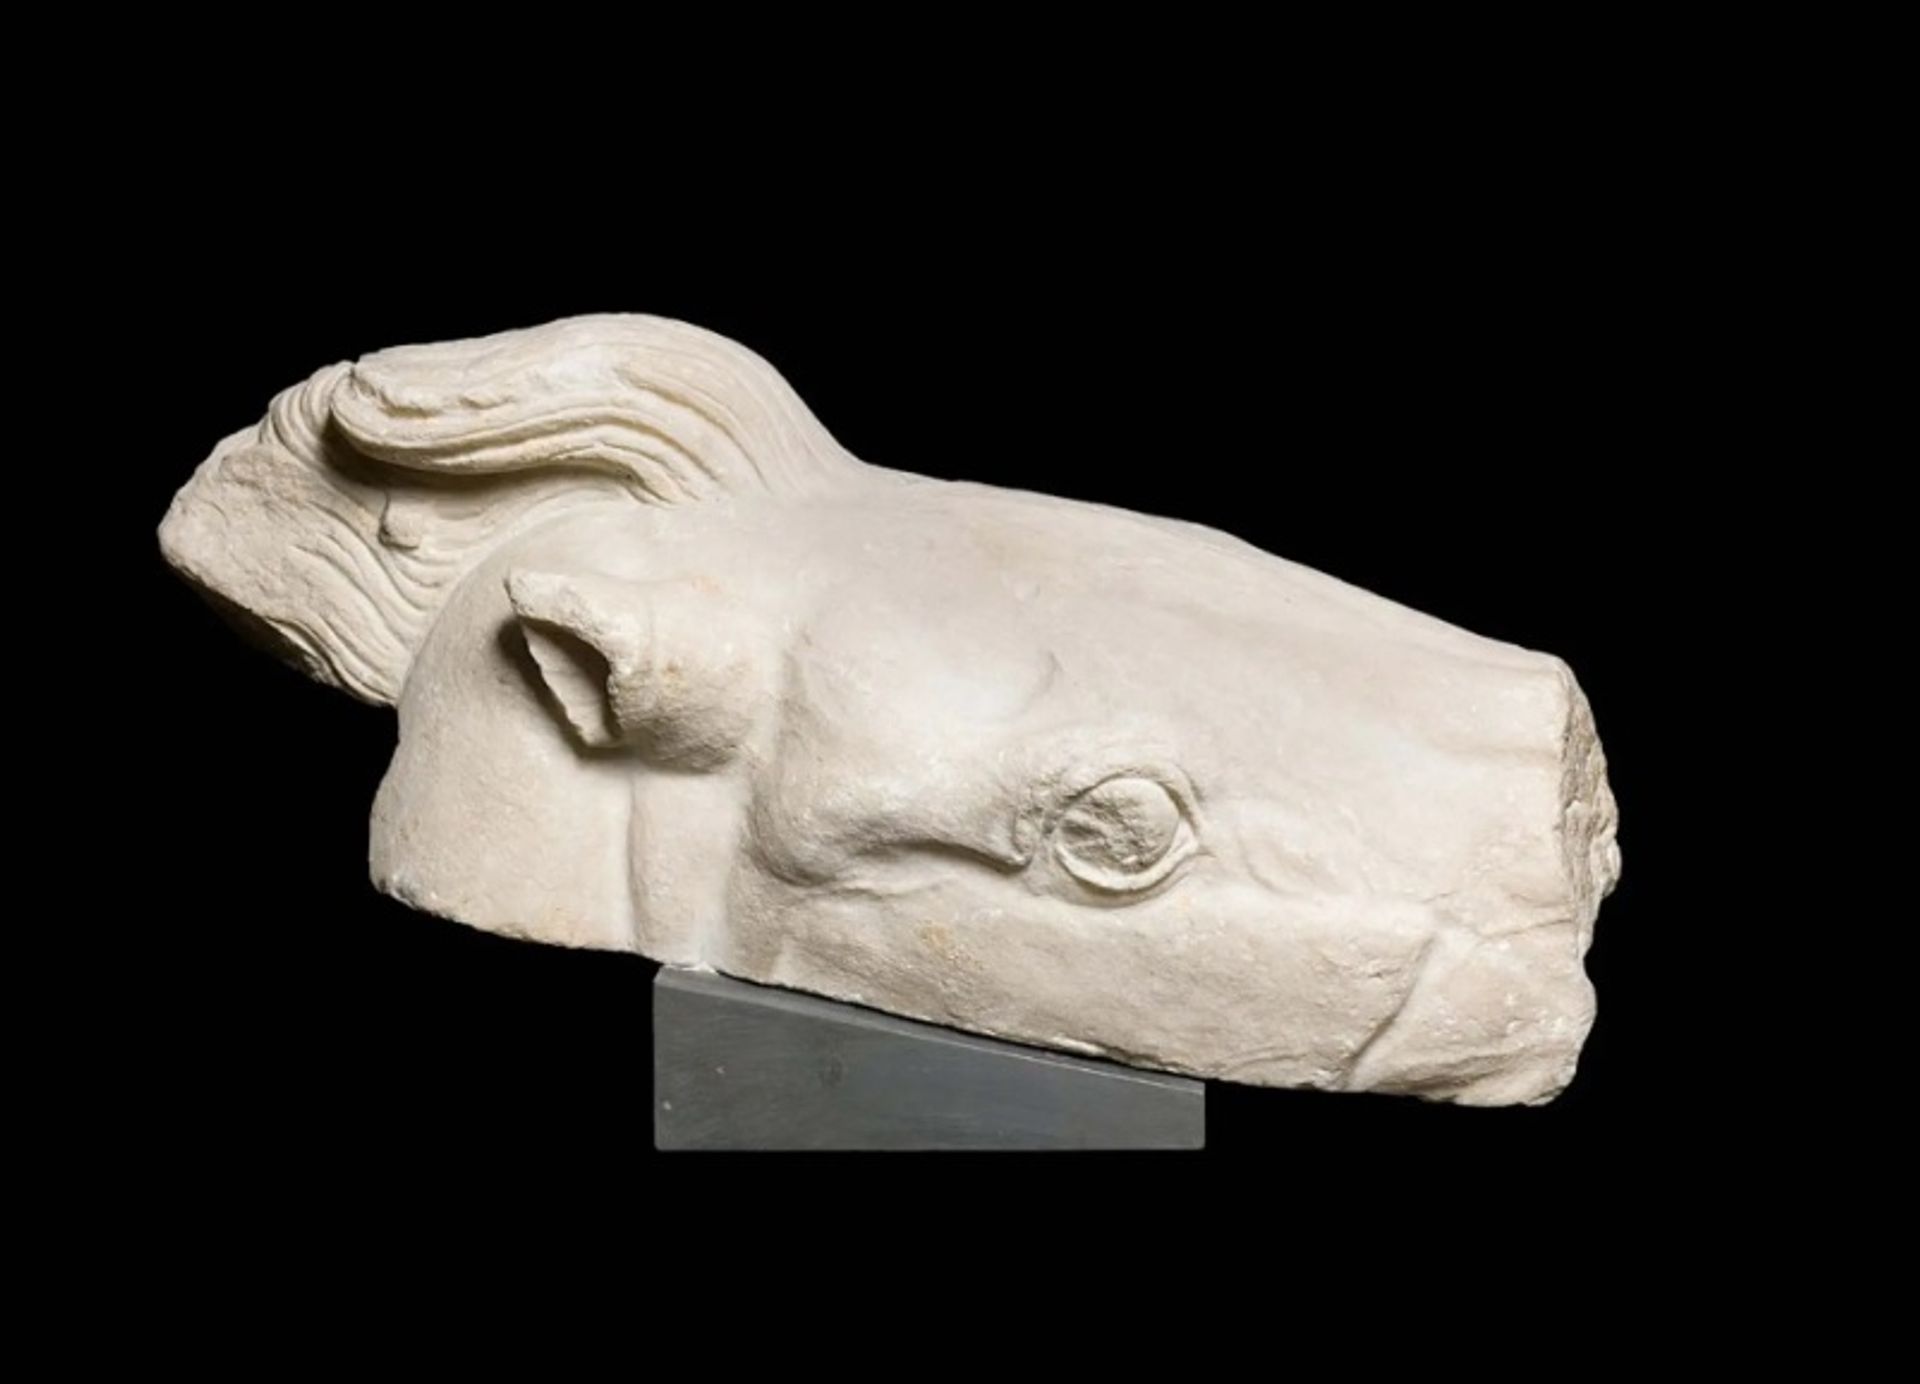 אחד משלושת שברי פסלי הפרתנון באוסף מוזיאוני הוותיקן, המתאר חלק מראשו של הסוס המושך את המרכבה של אתנה

מוזיאוני הוותיקן